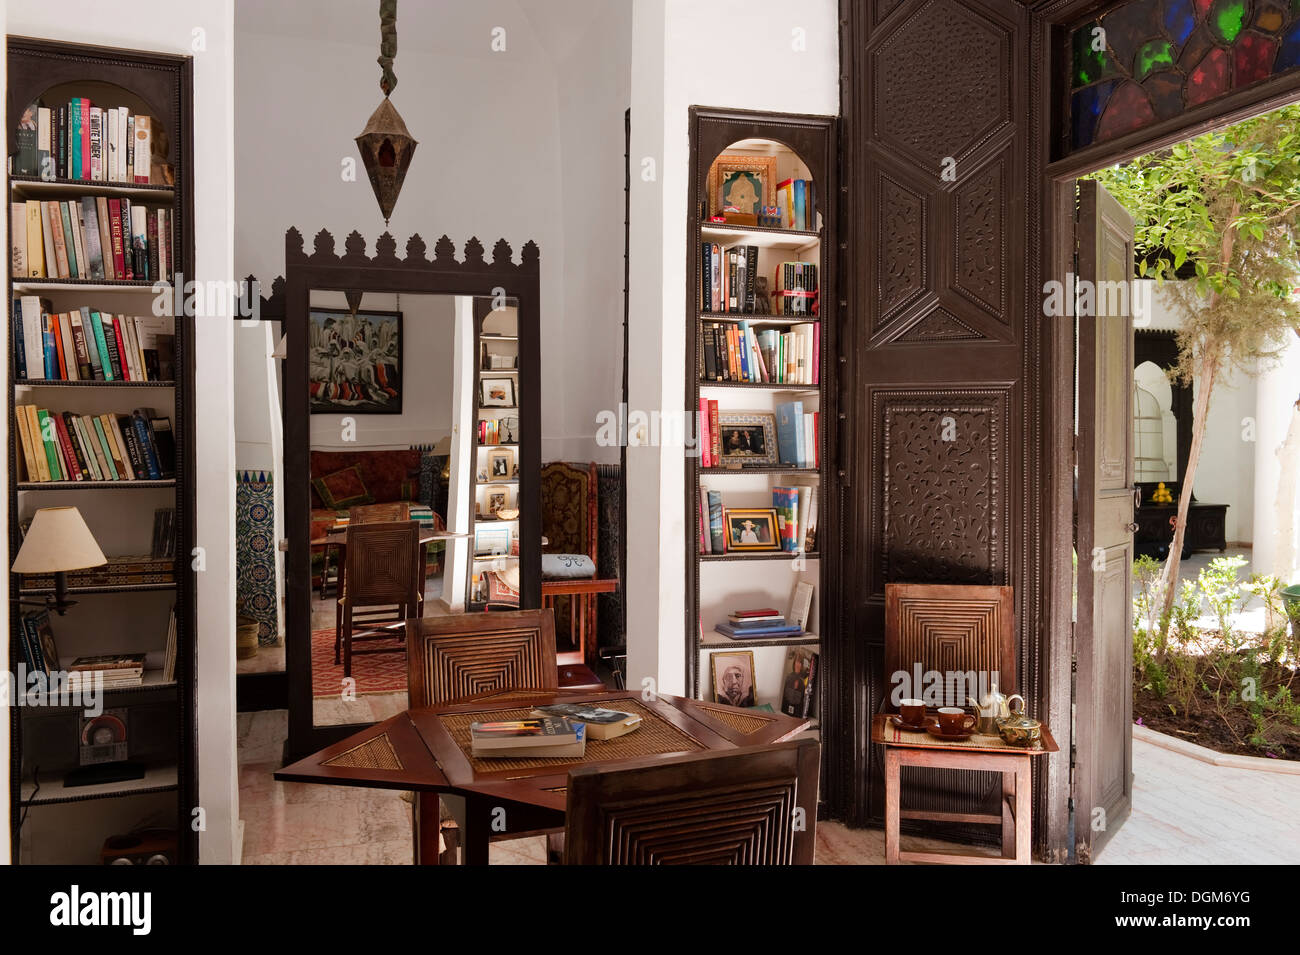 Wunderschöne marokkanische Studienbibliothek in marokkanischen Haus Zugehörigkeit zu bekannten Interior Design-Duo - Raynaud & Kramer Stockfoto